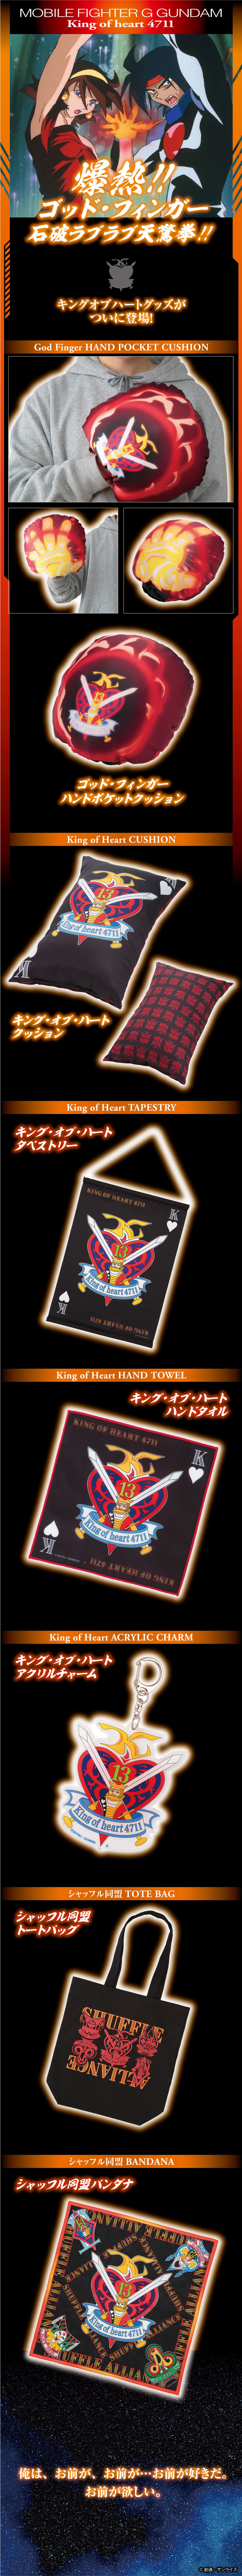 Mobile Fighter G Gundam King of Heart 4711 Cushion